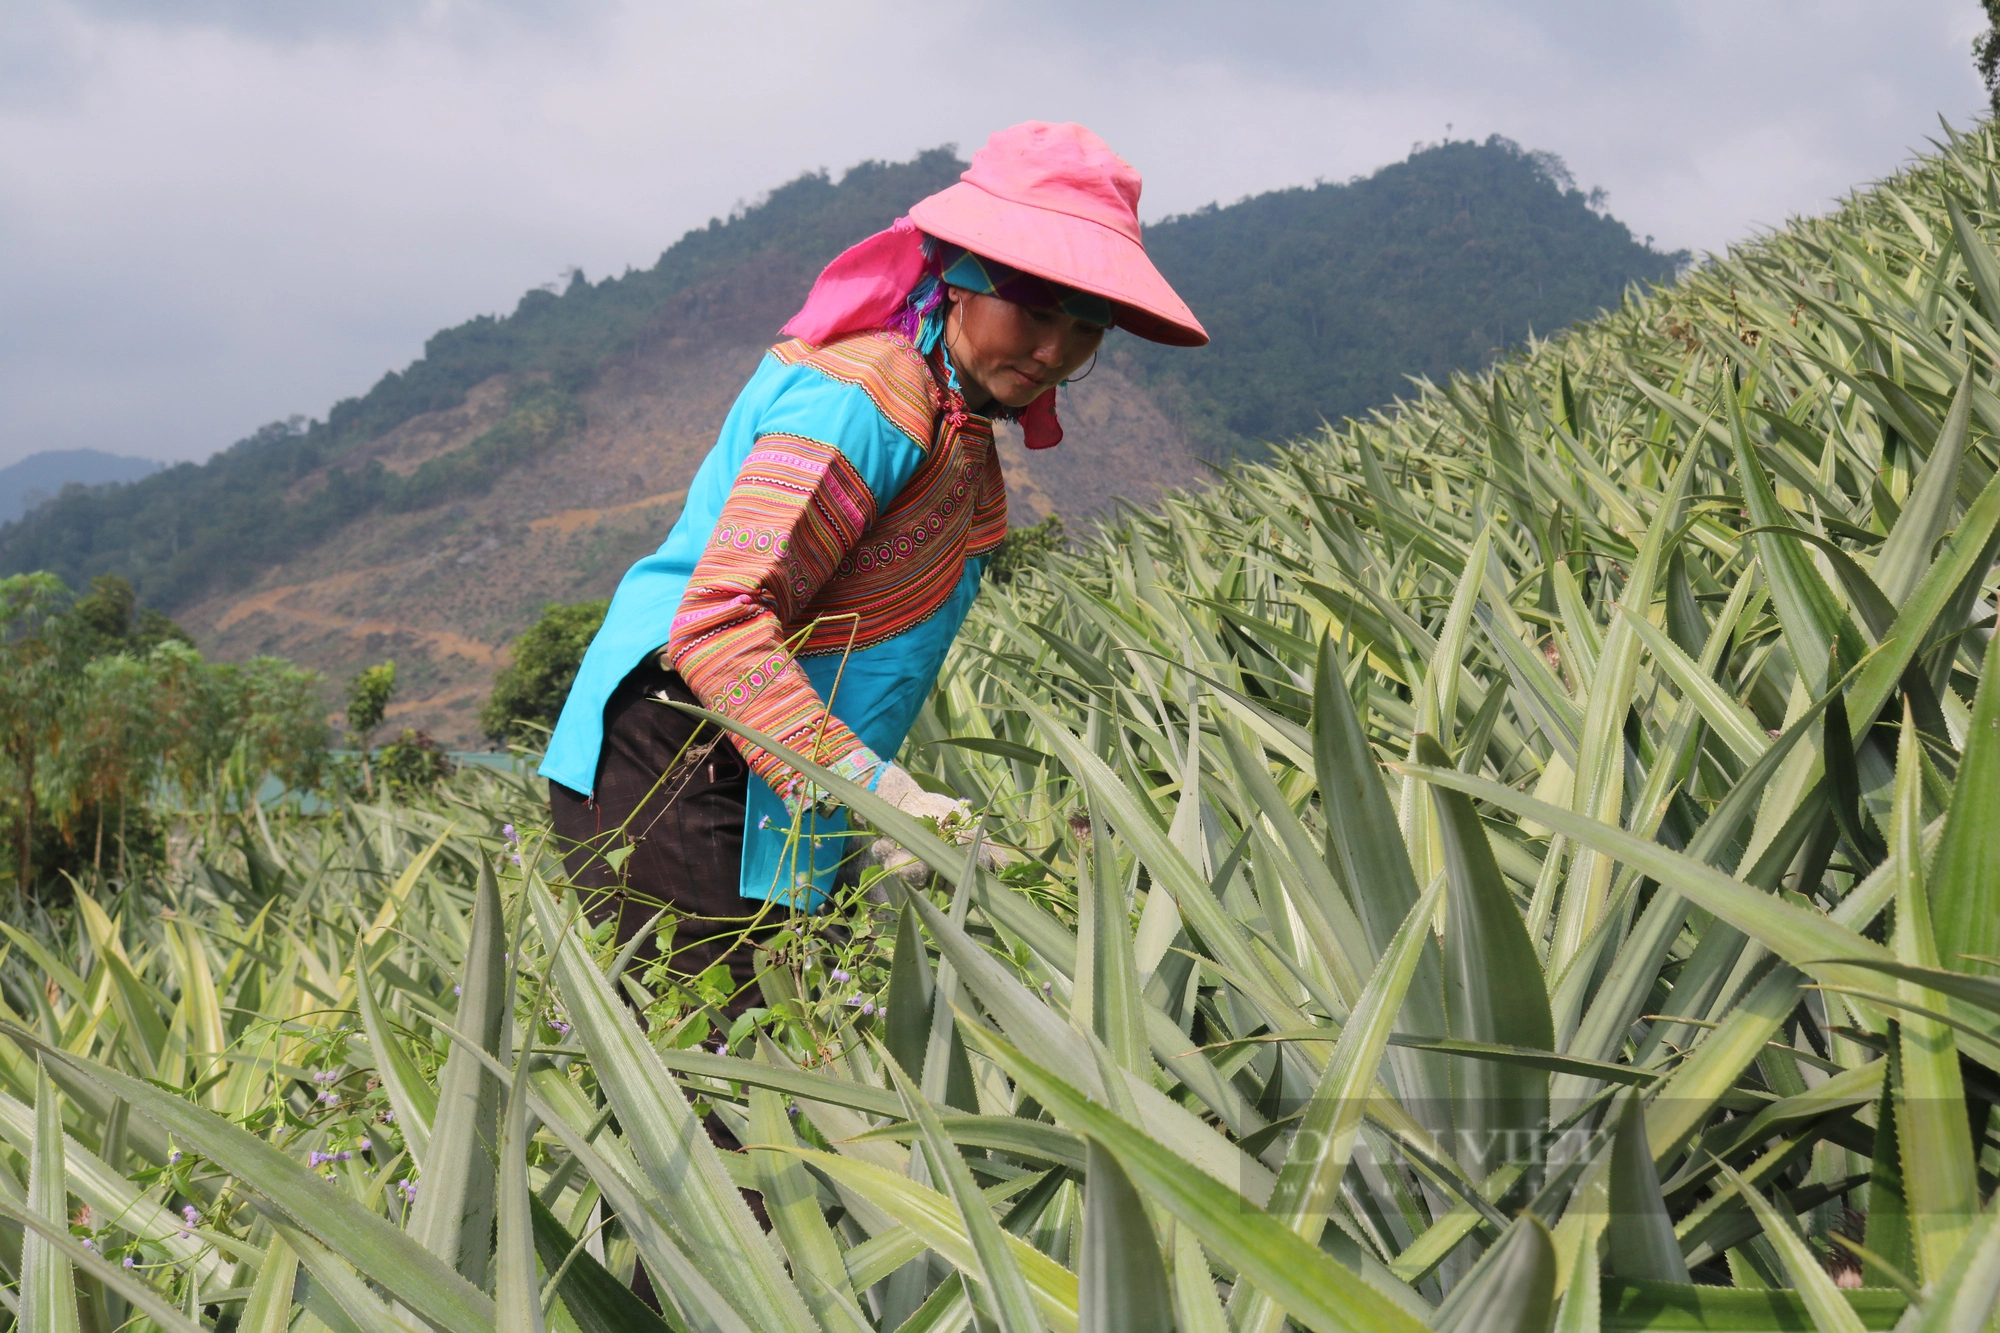 Tổ hội nông dân nghề nghiệp trồng dứa vùng biên ở Lào Cai mong muốn phát triển cây dứa bền vững - Ảnh 2.